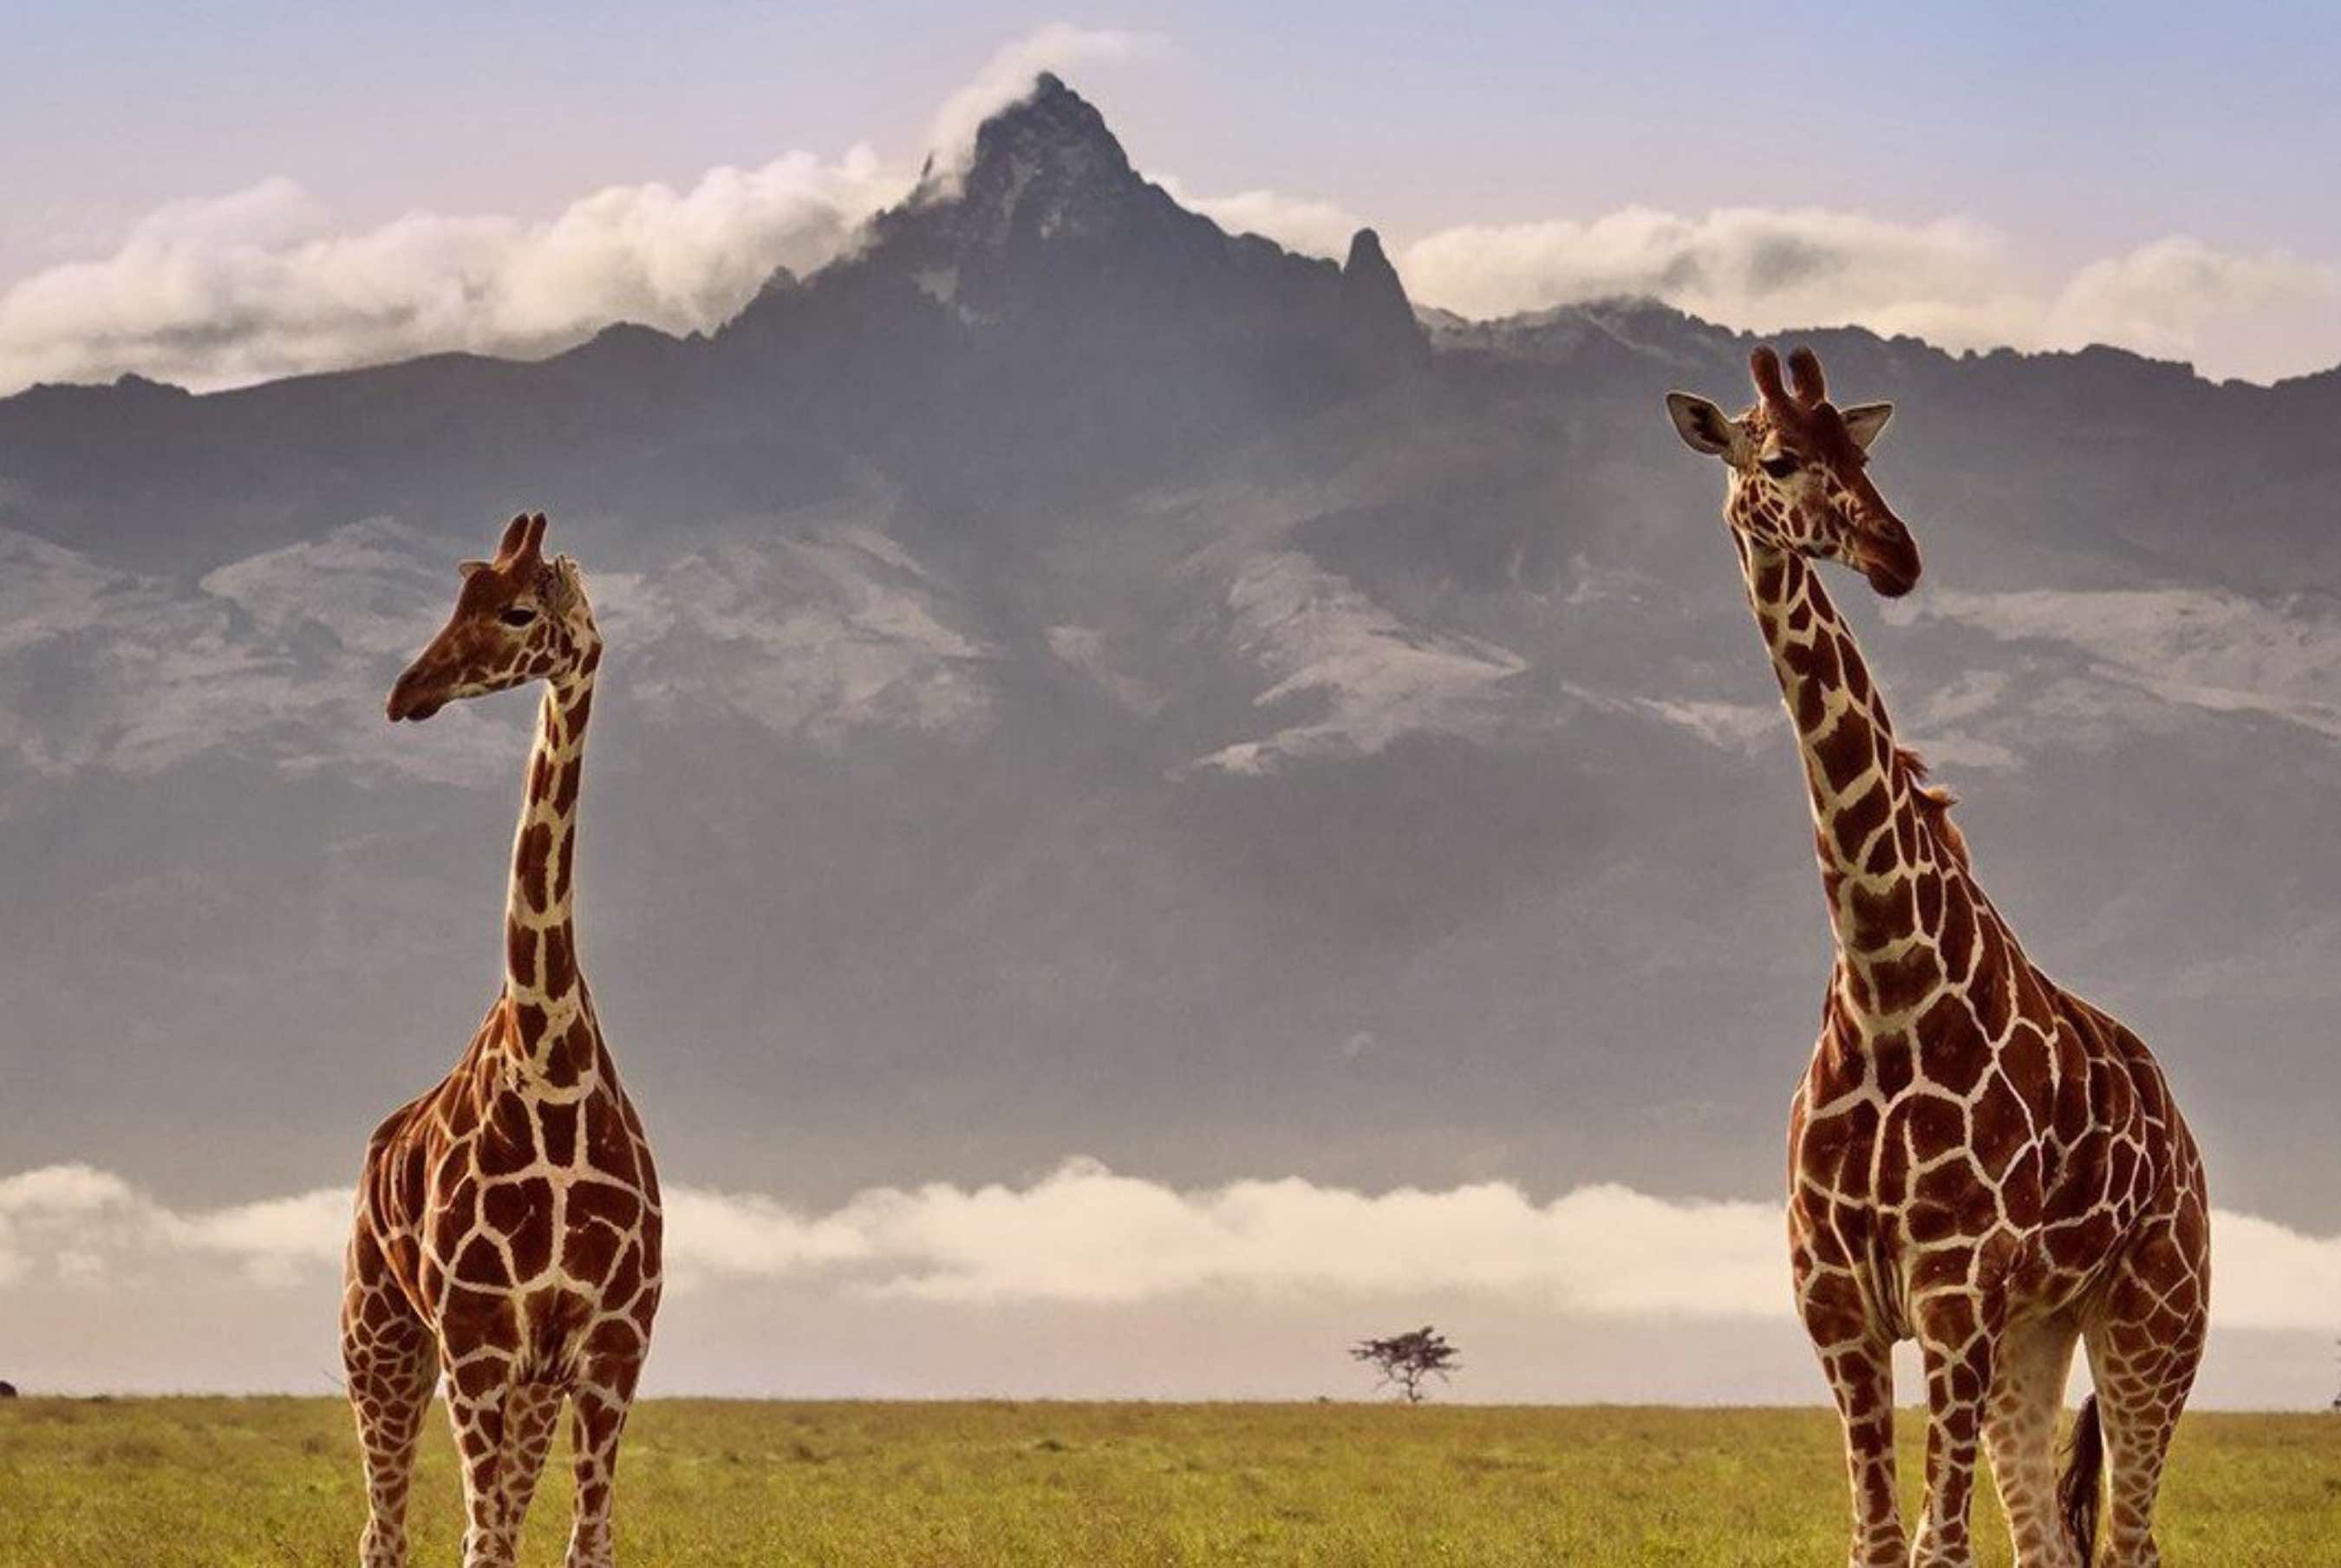 Cẩm nang du lịch Kenya từ A đến Z